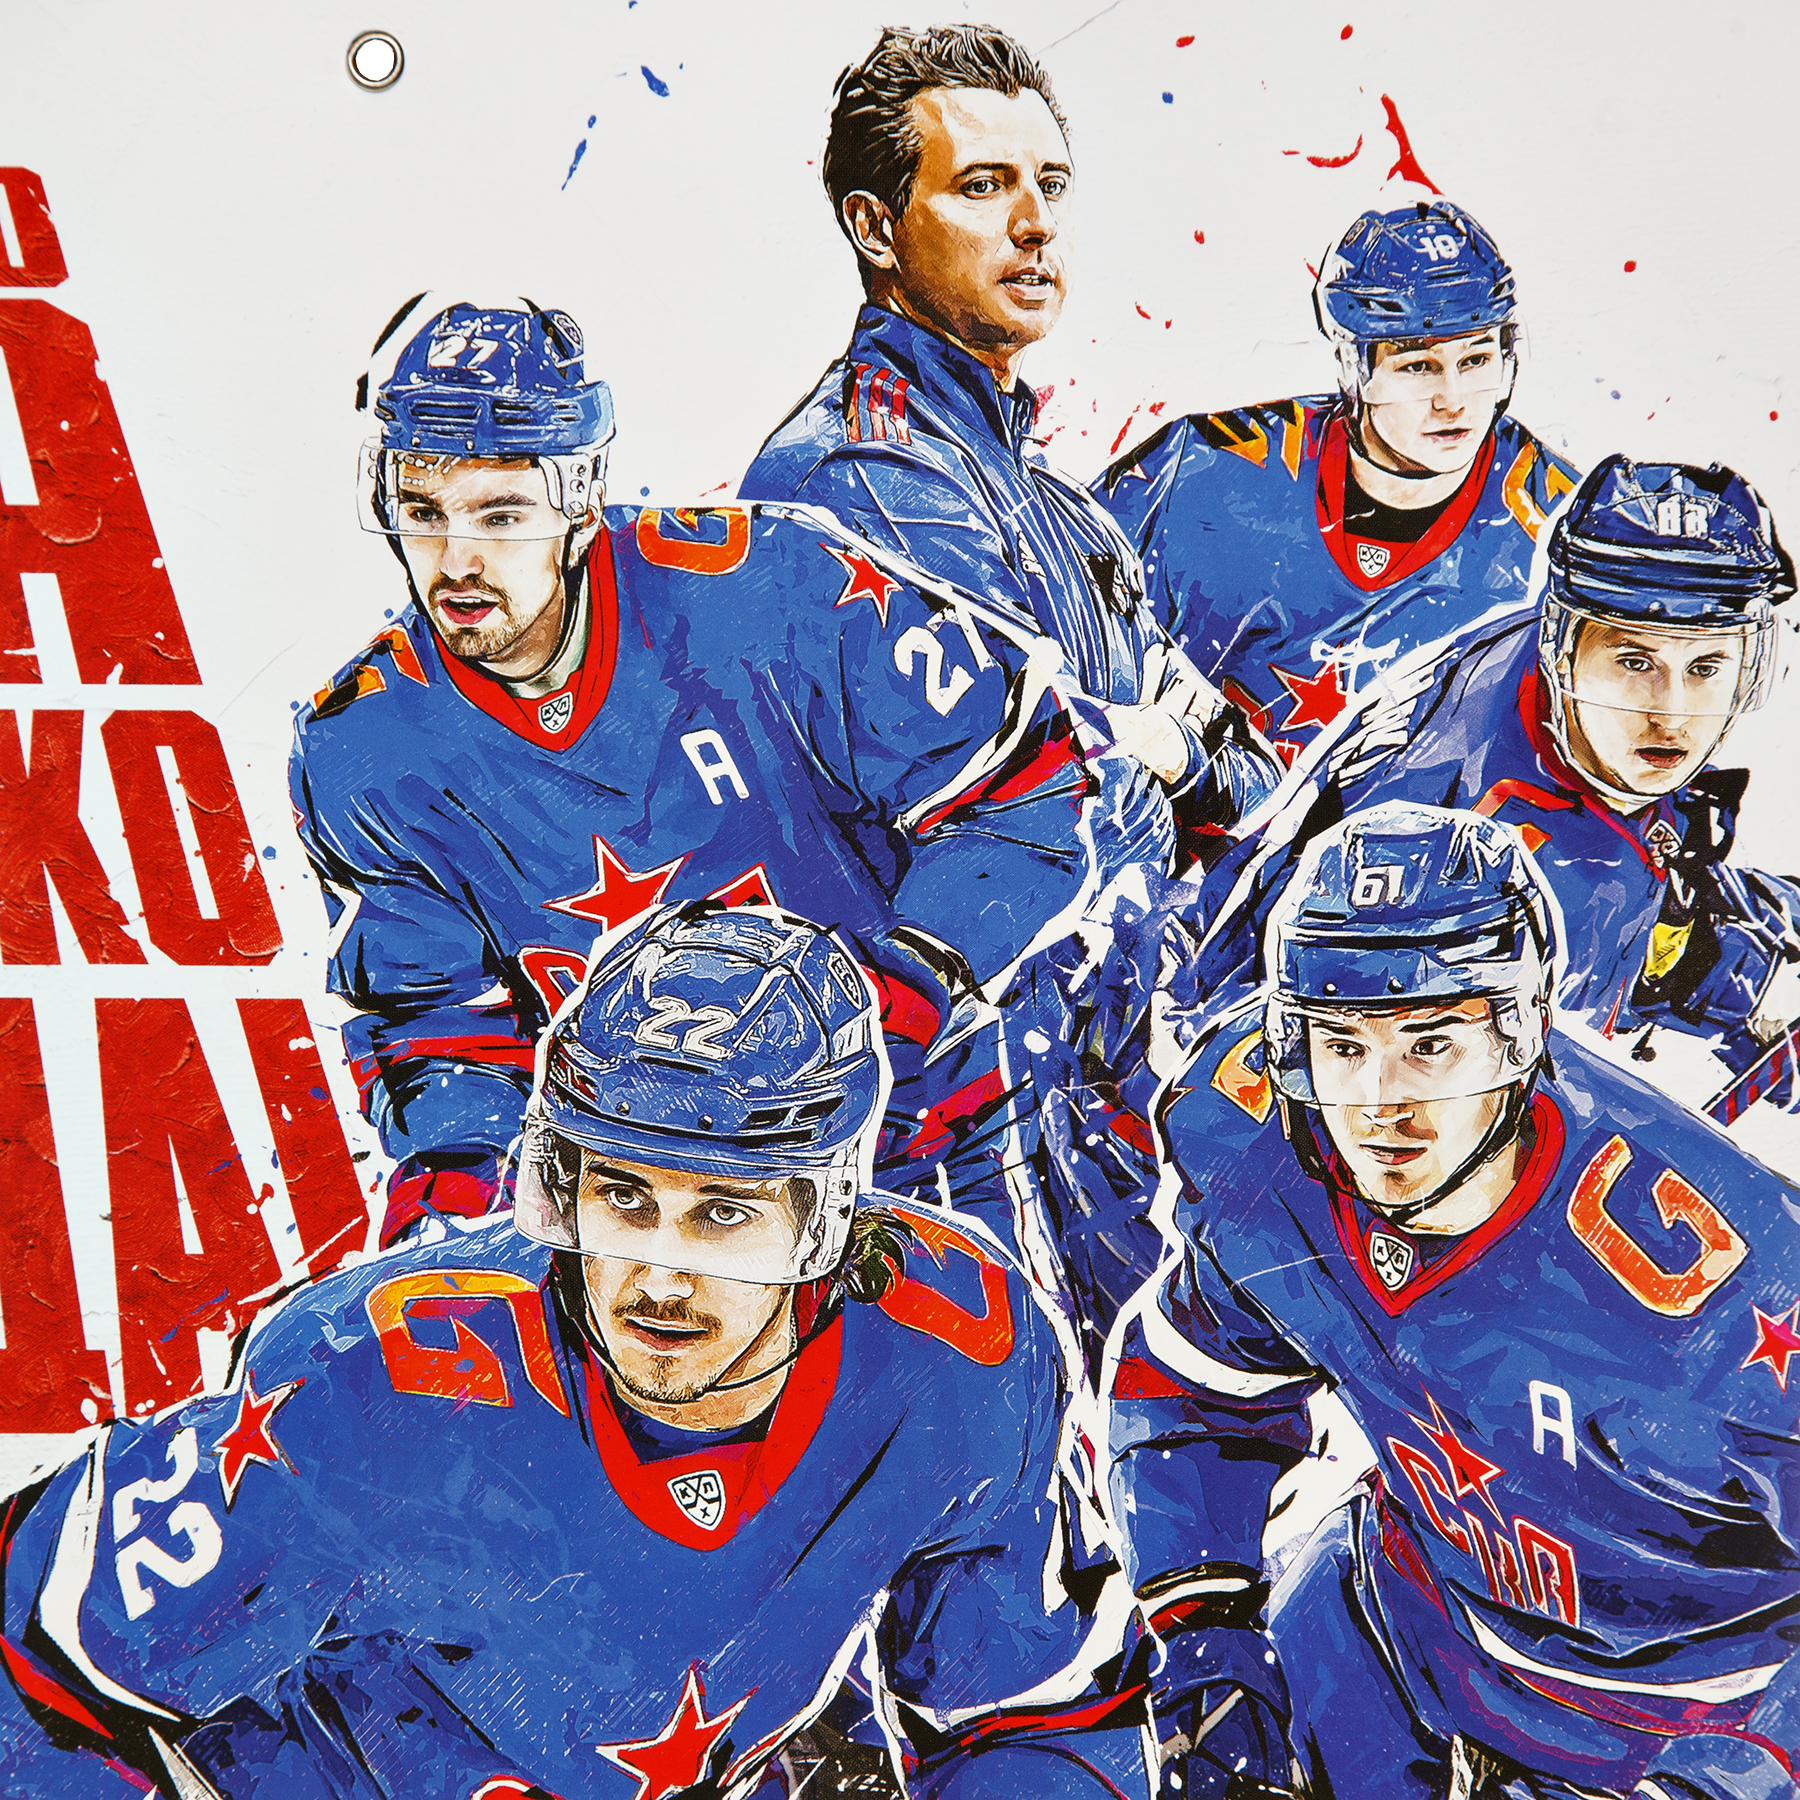 Настенный календарь СКА 2023 год купить за 290 руб. в интернет-магазине  Хоккейного клуба СКА